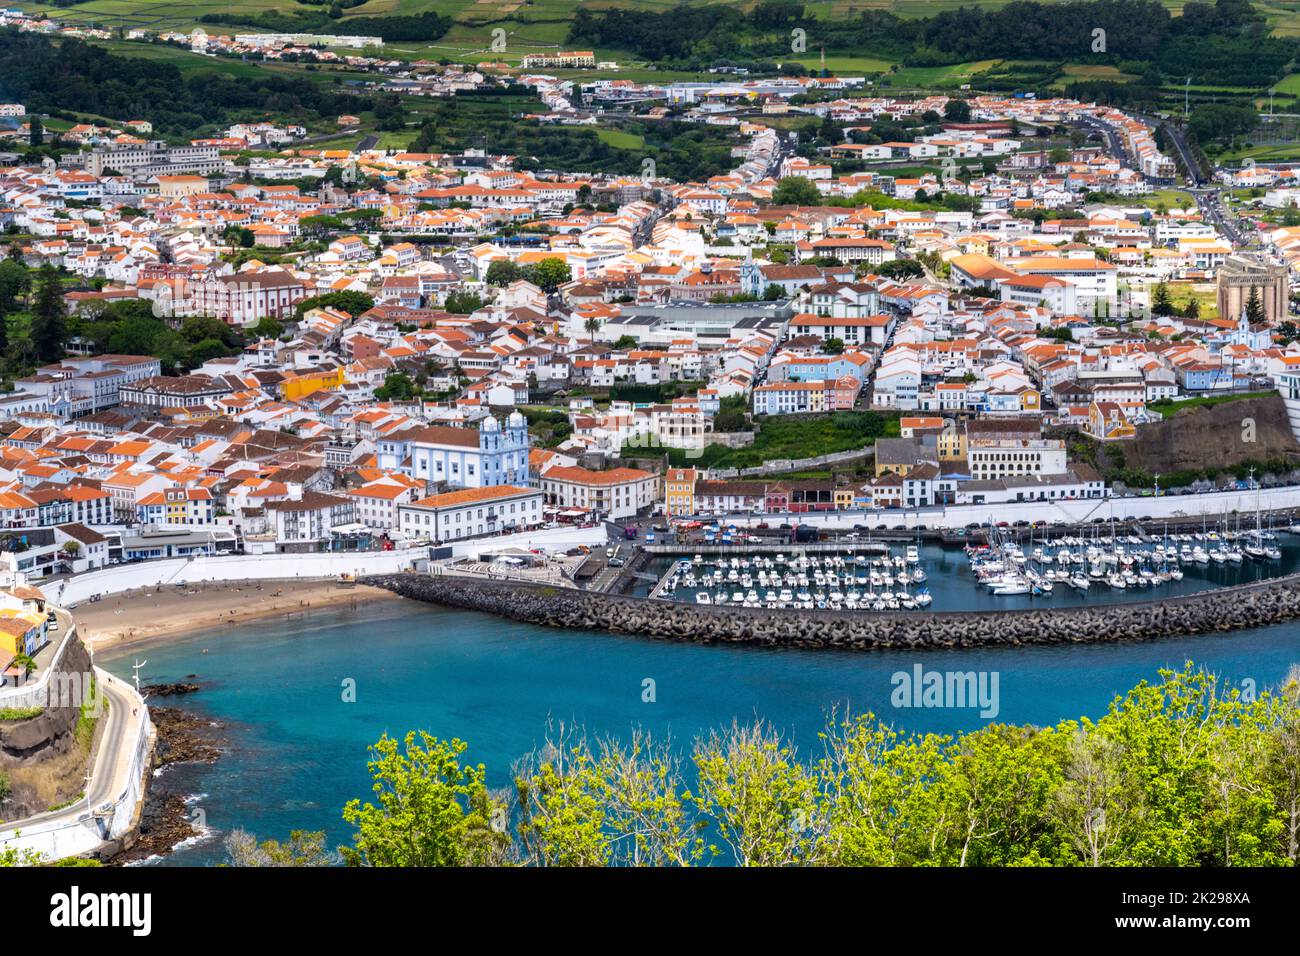 Vista sulla città del centro storico, spiaggia pubblica chiamata Praia de Angra do Heroismo e Chiesa di Igreja da Misericordia dal Monte Brasil, ad Angra do Heroismo, Isola di Terceira, Azzorre, Portogallo. Foto Stock